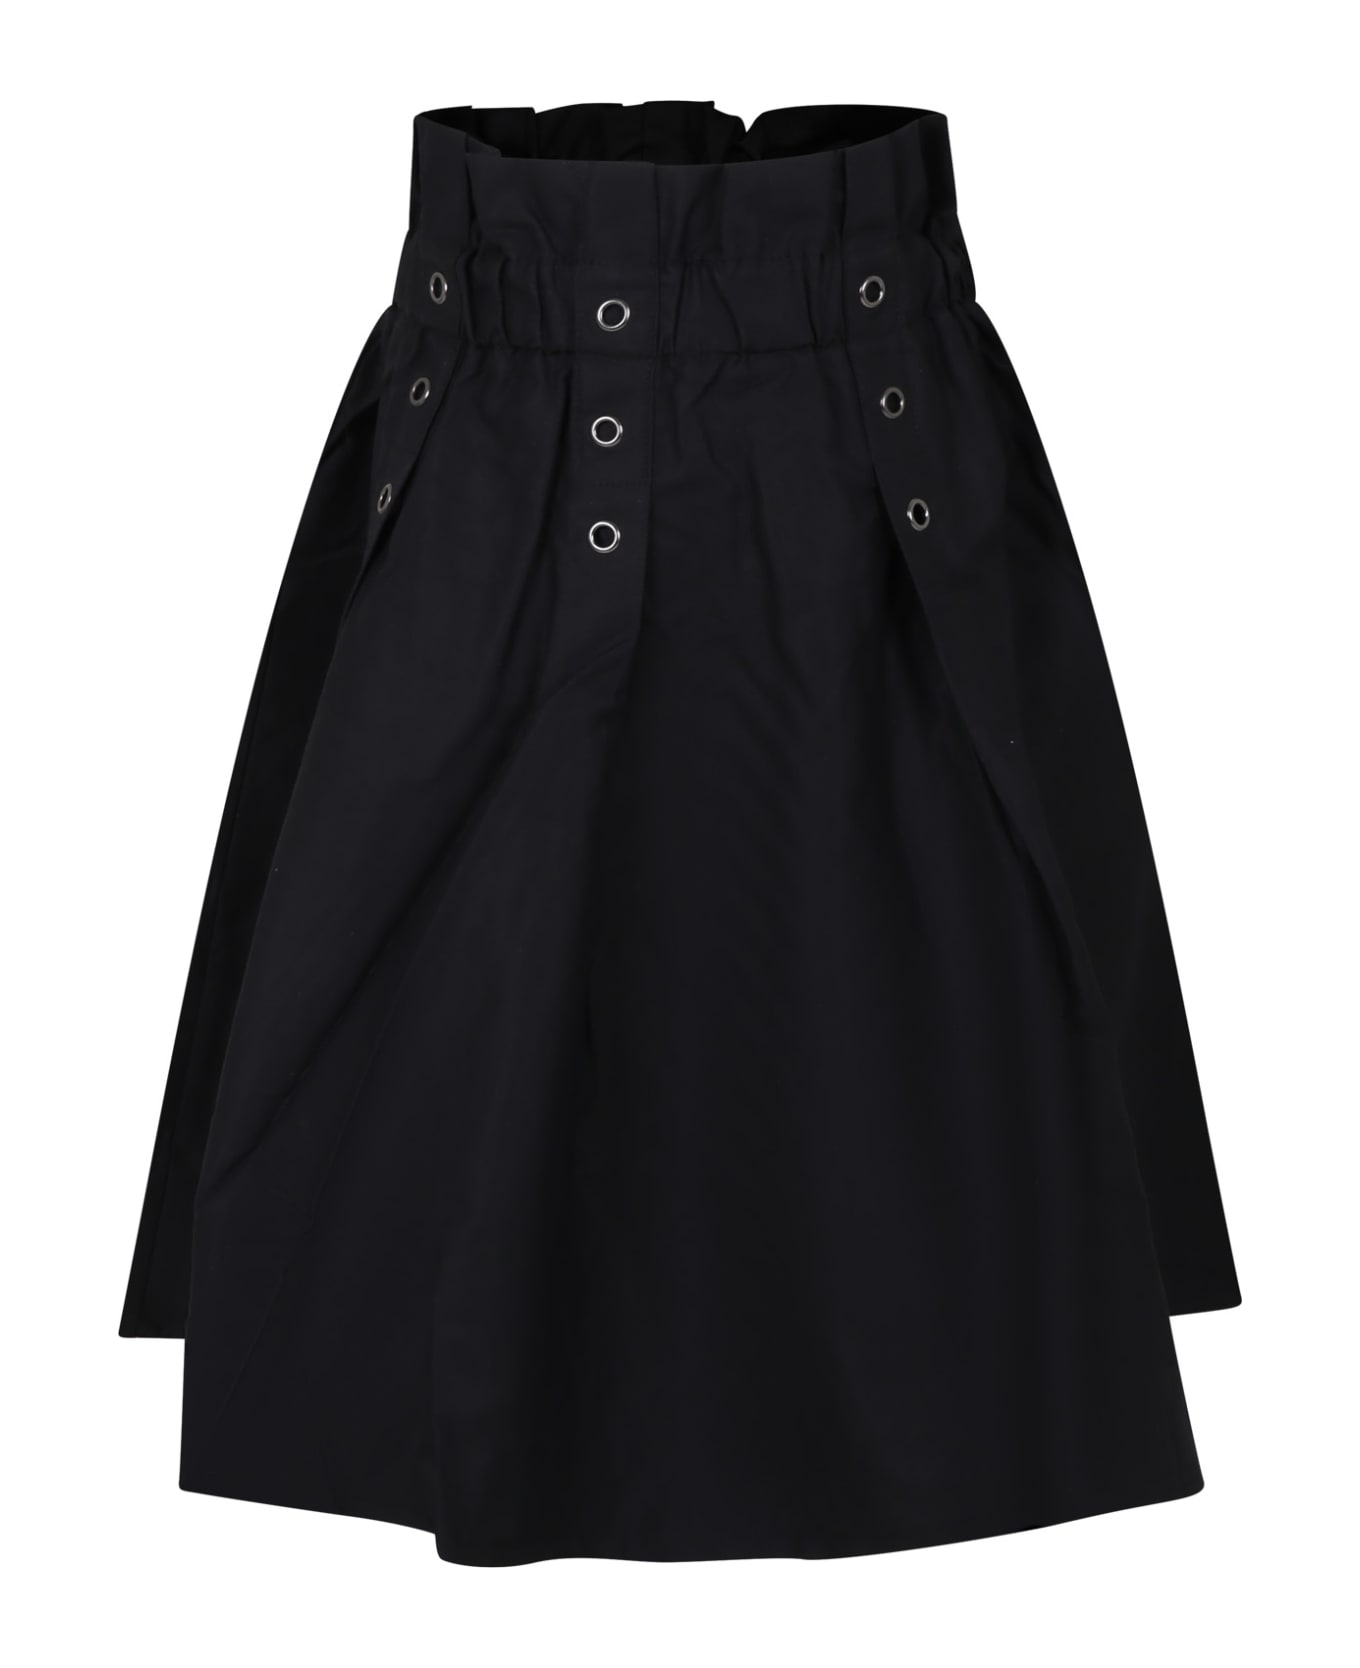 DKNY Black Casual Skirt For Girl - Black ボトムス